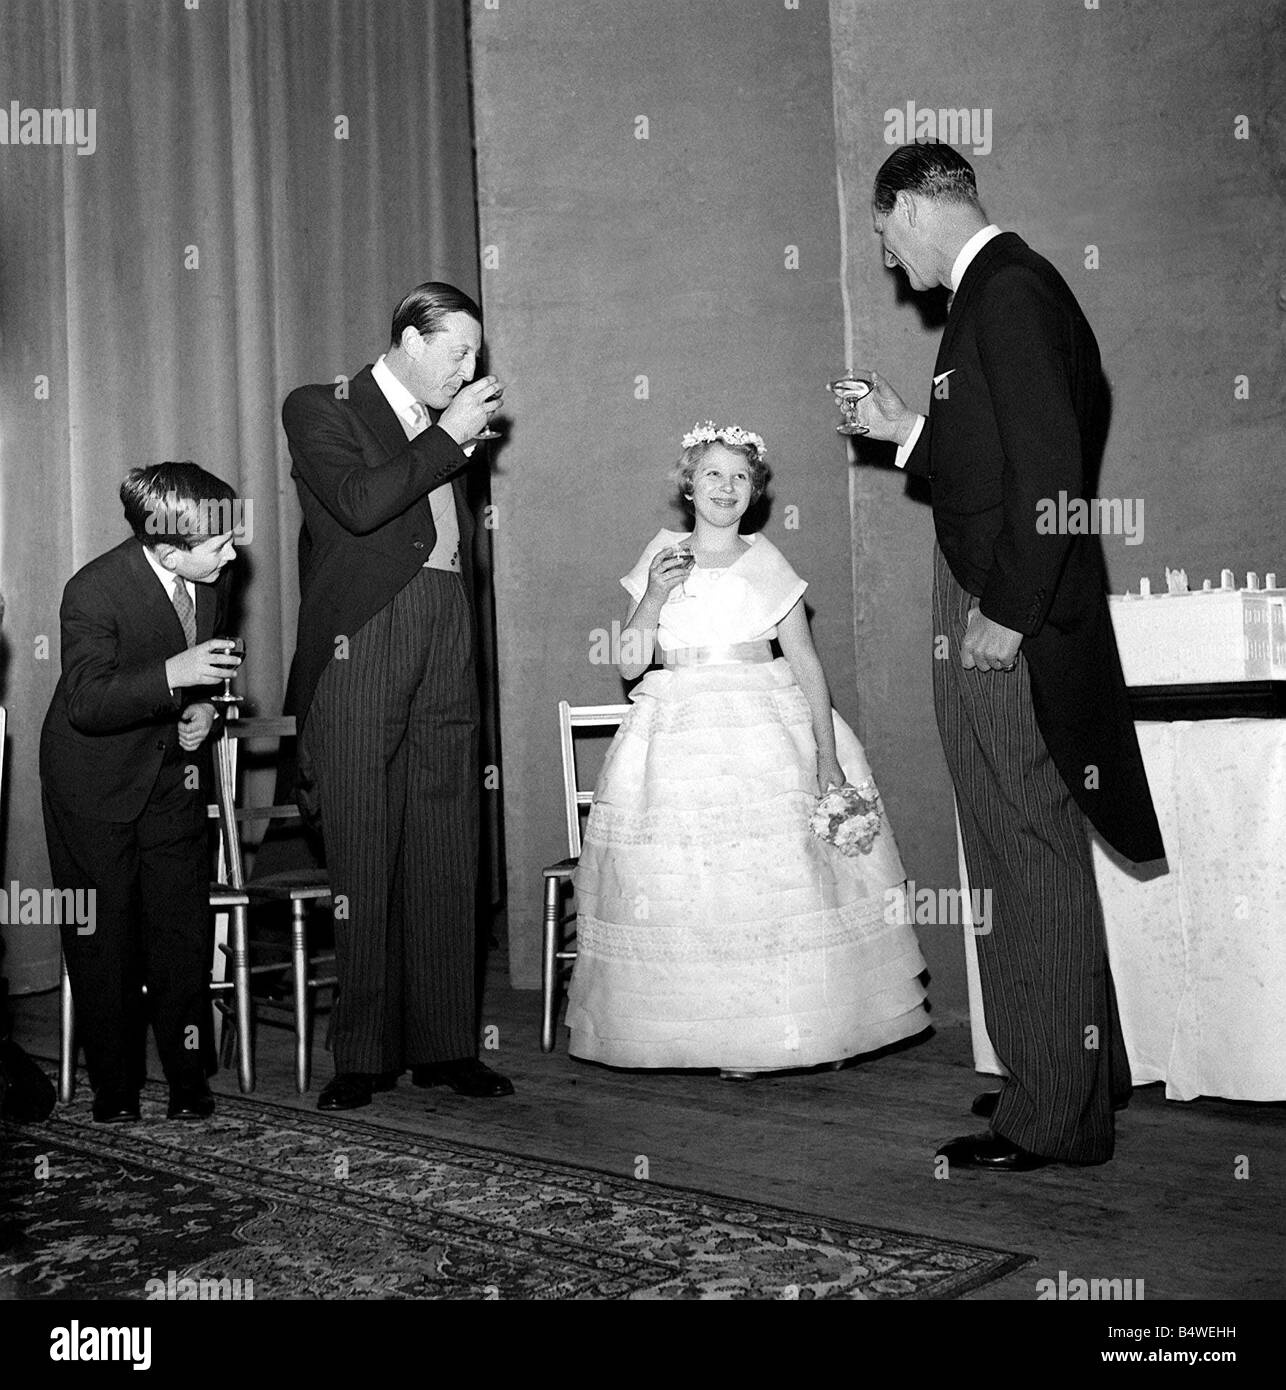 Ein junger Prinz Charles Januar 1960 tritt in einem Toast für seine ältere  Schwester Prinzessin Anne mit seinem Vater den Duke of Edinburgh Prinz  Philip Y2K Royalty Weby dtgu2 Stockfotografie - Alamy